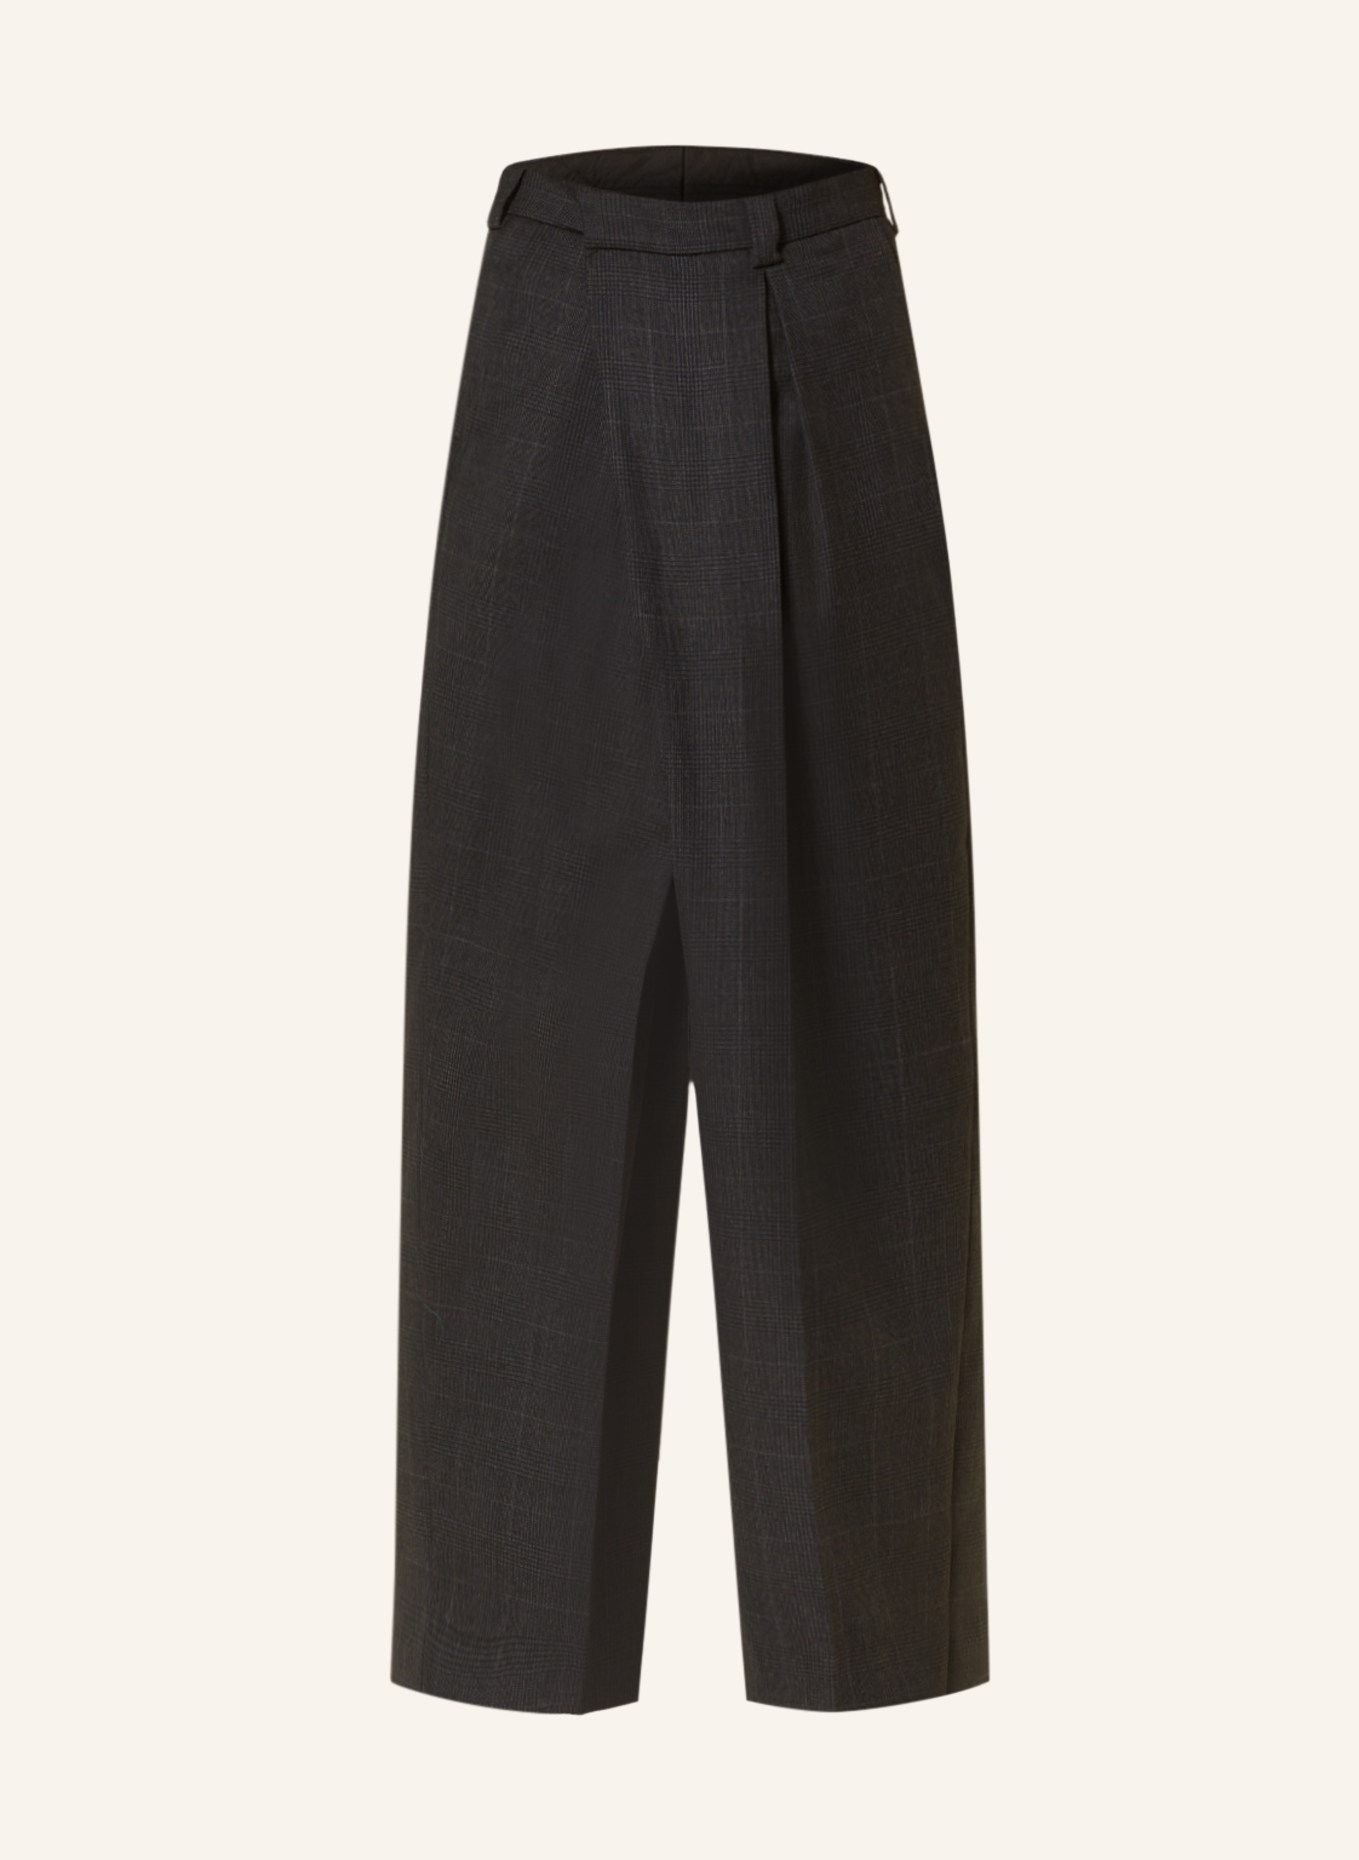 Acne Studios Trousers regular fit, Color: DARK GRAY/ GRAY (Image 1)